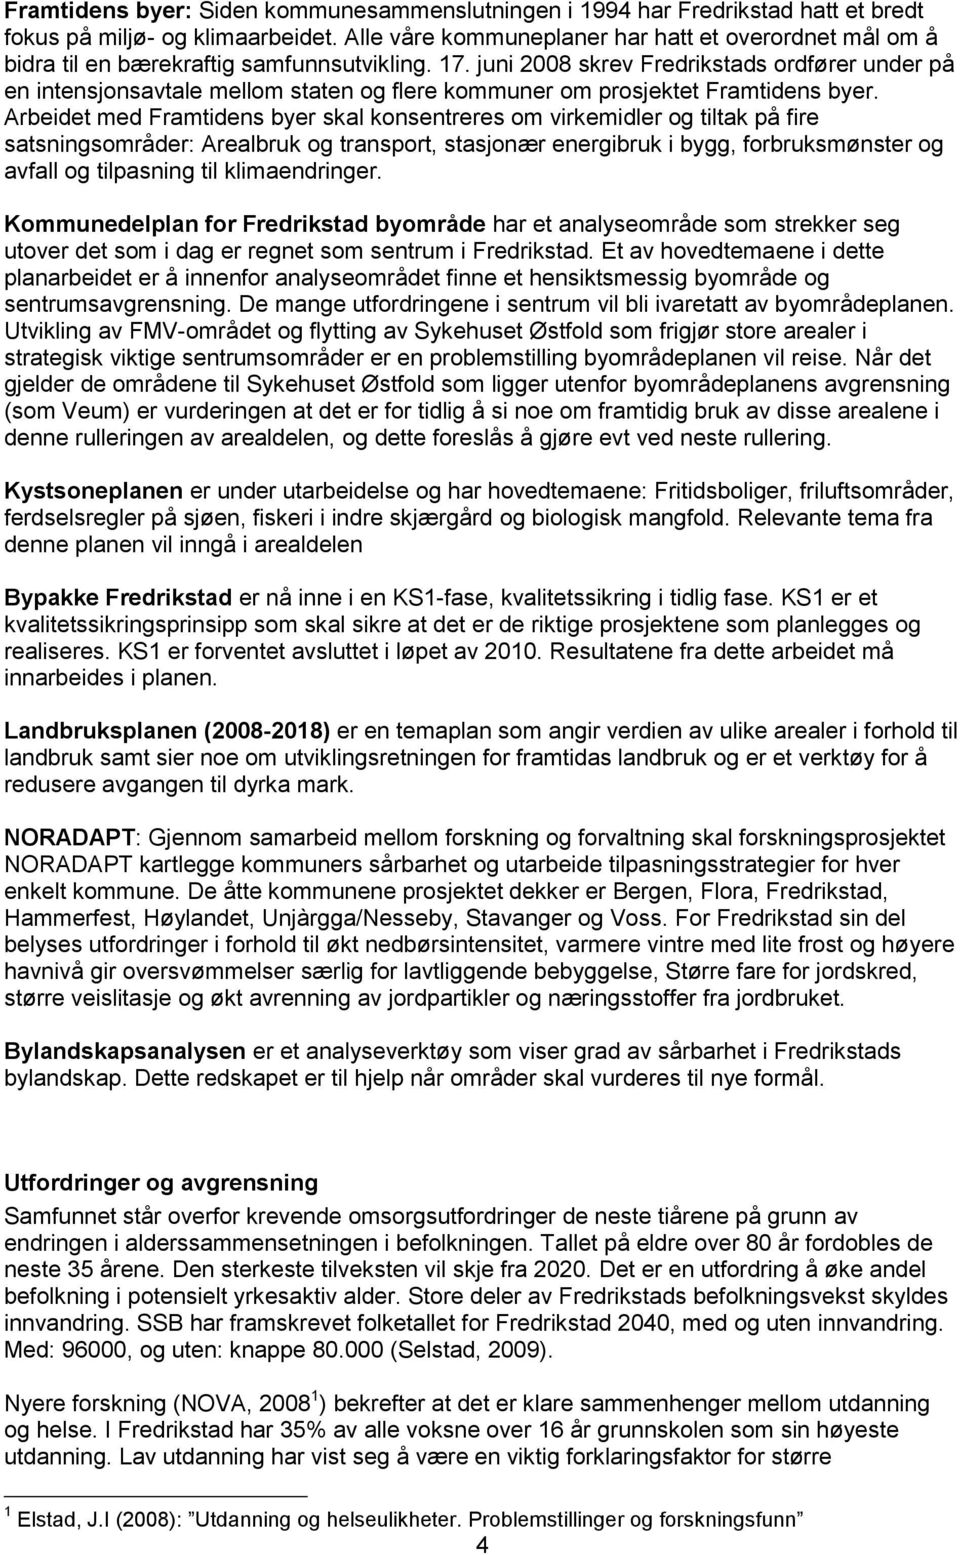 juni 2008 skrev Fredrikstads ordfører under på en intensjonsavtale mellom staten og flere kommuner om prosjektet Framtidens byer.